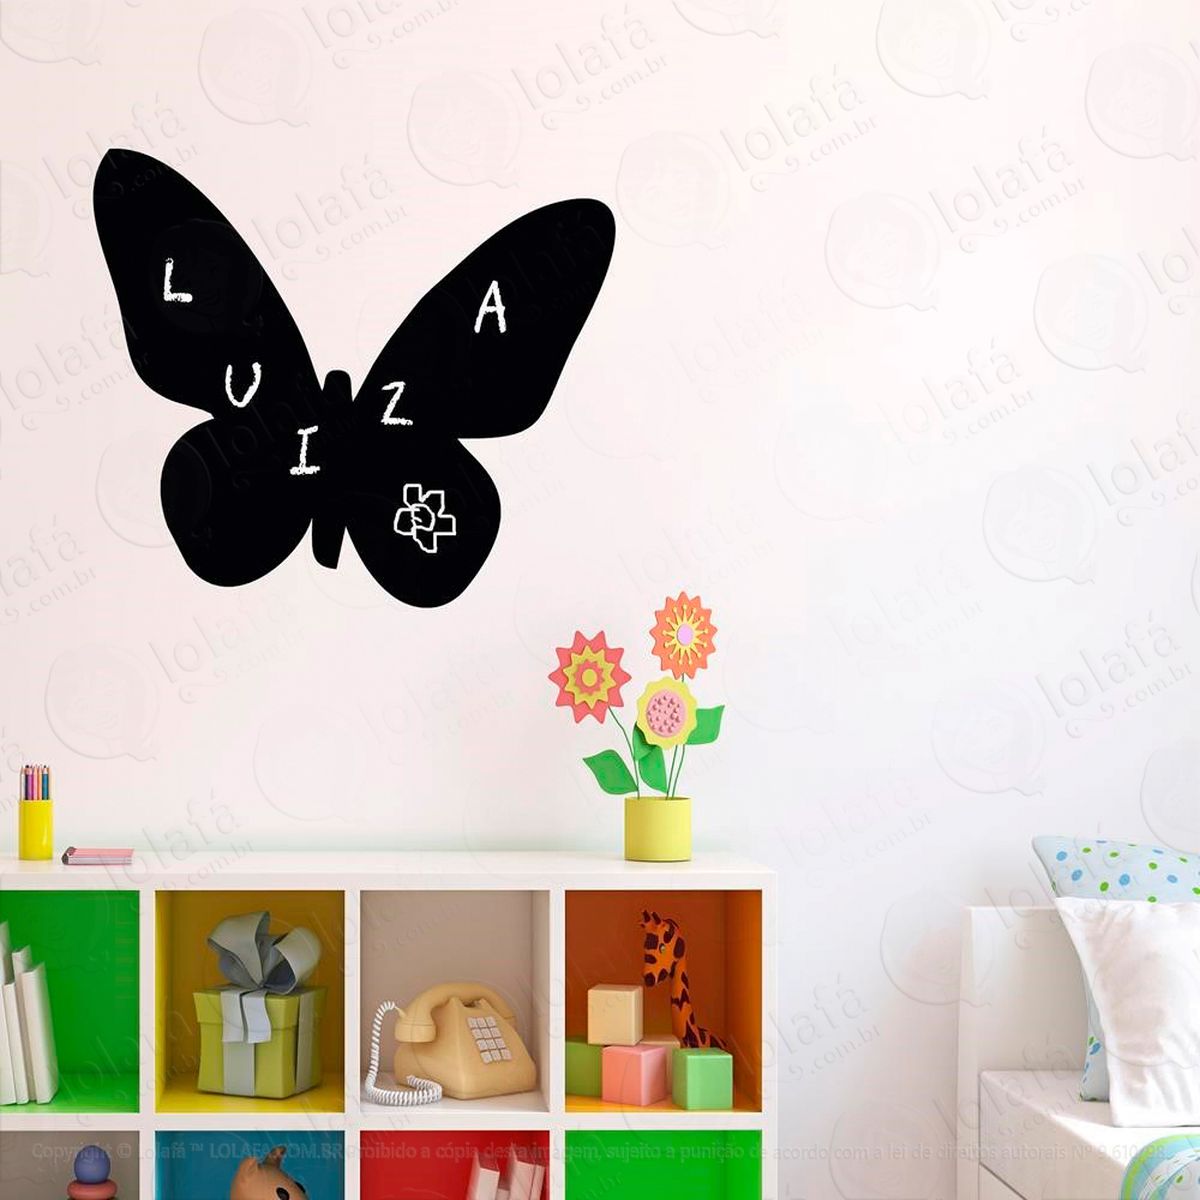 borboleta adesivo lousa quadro negro de parede para escrever com giz - mod:289